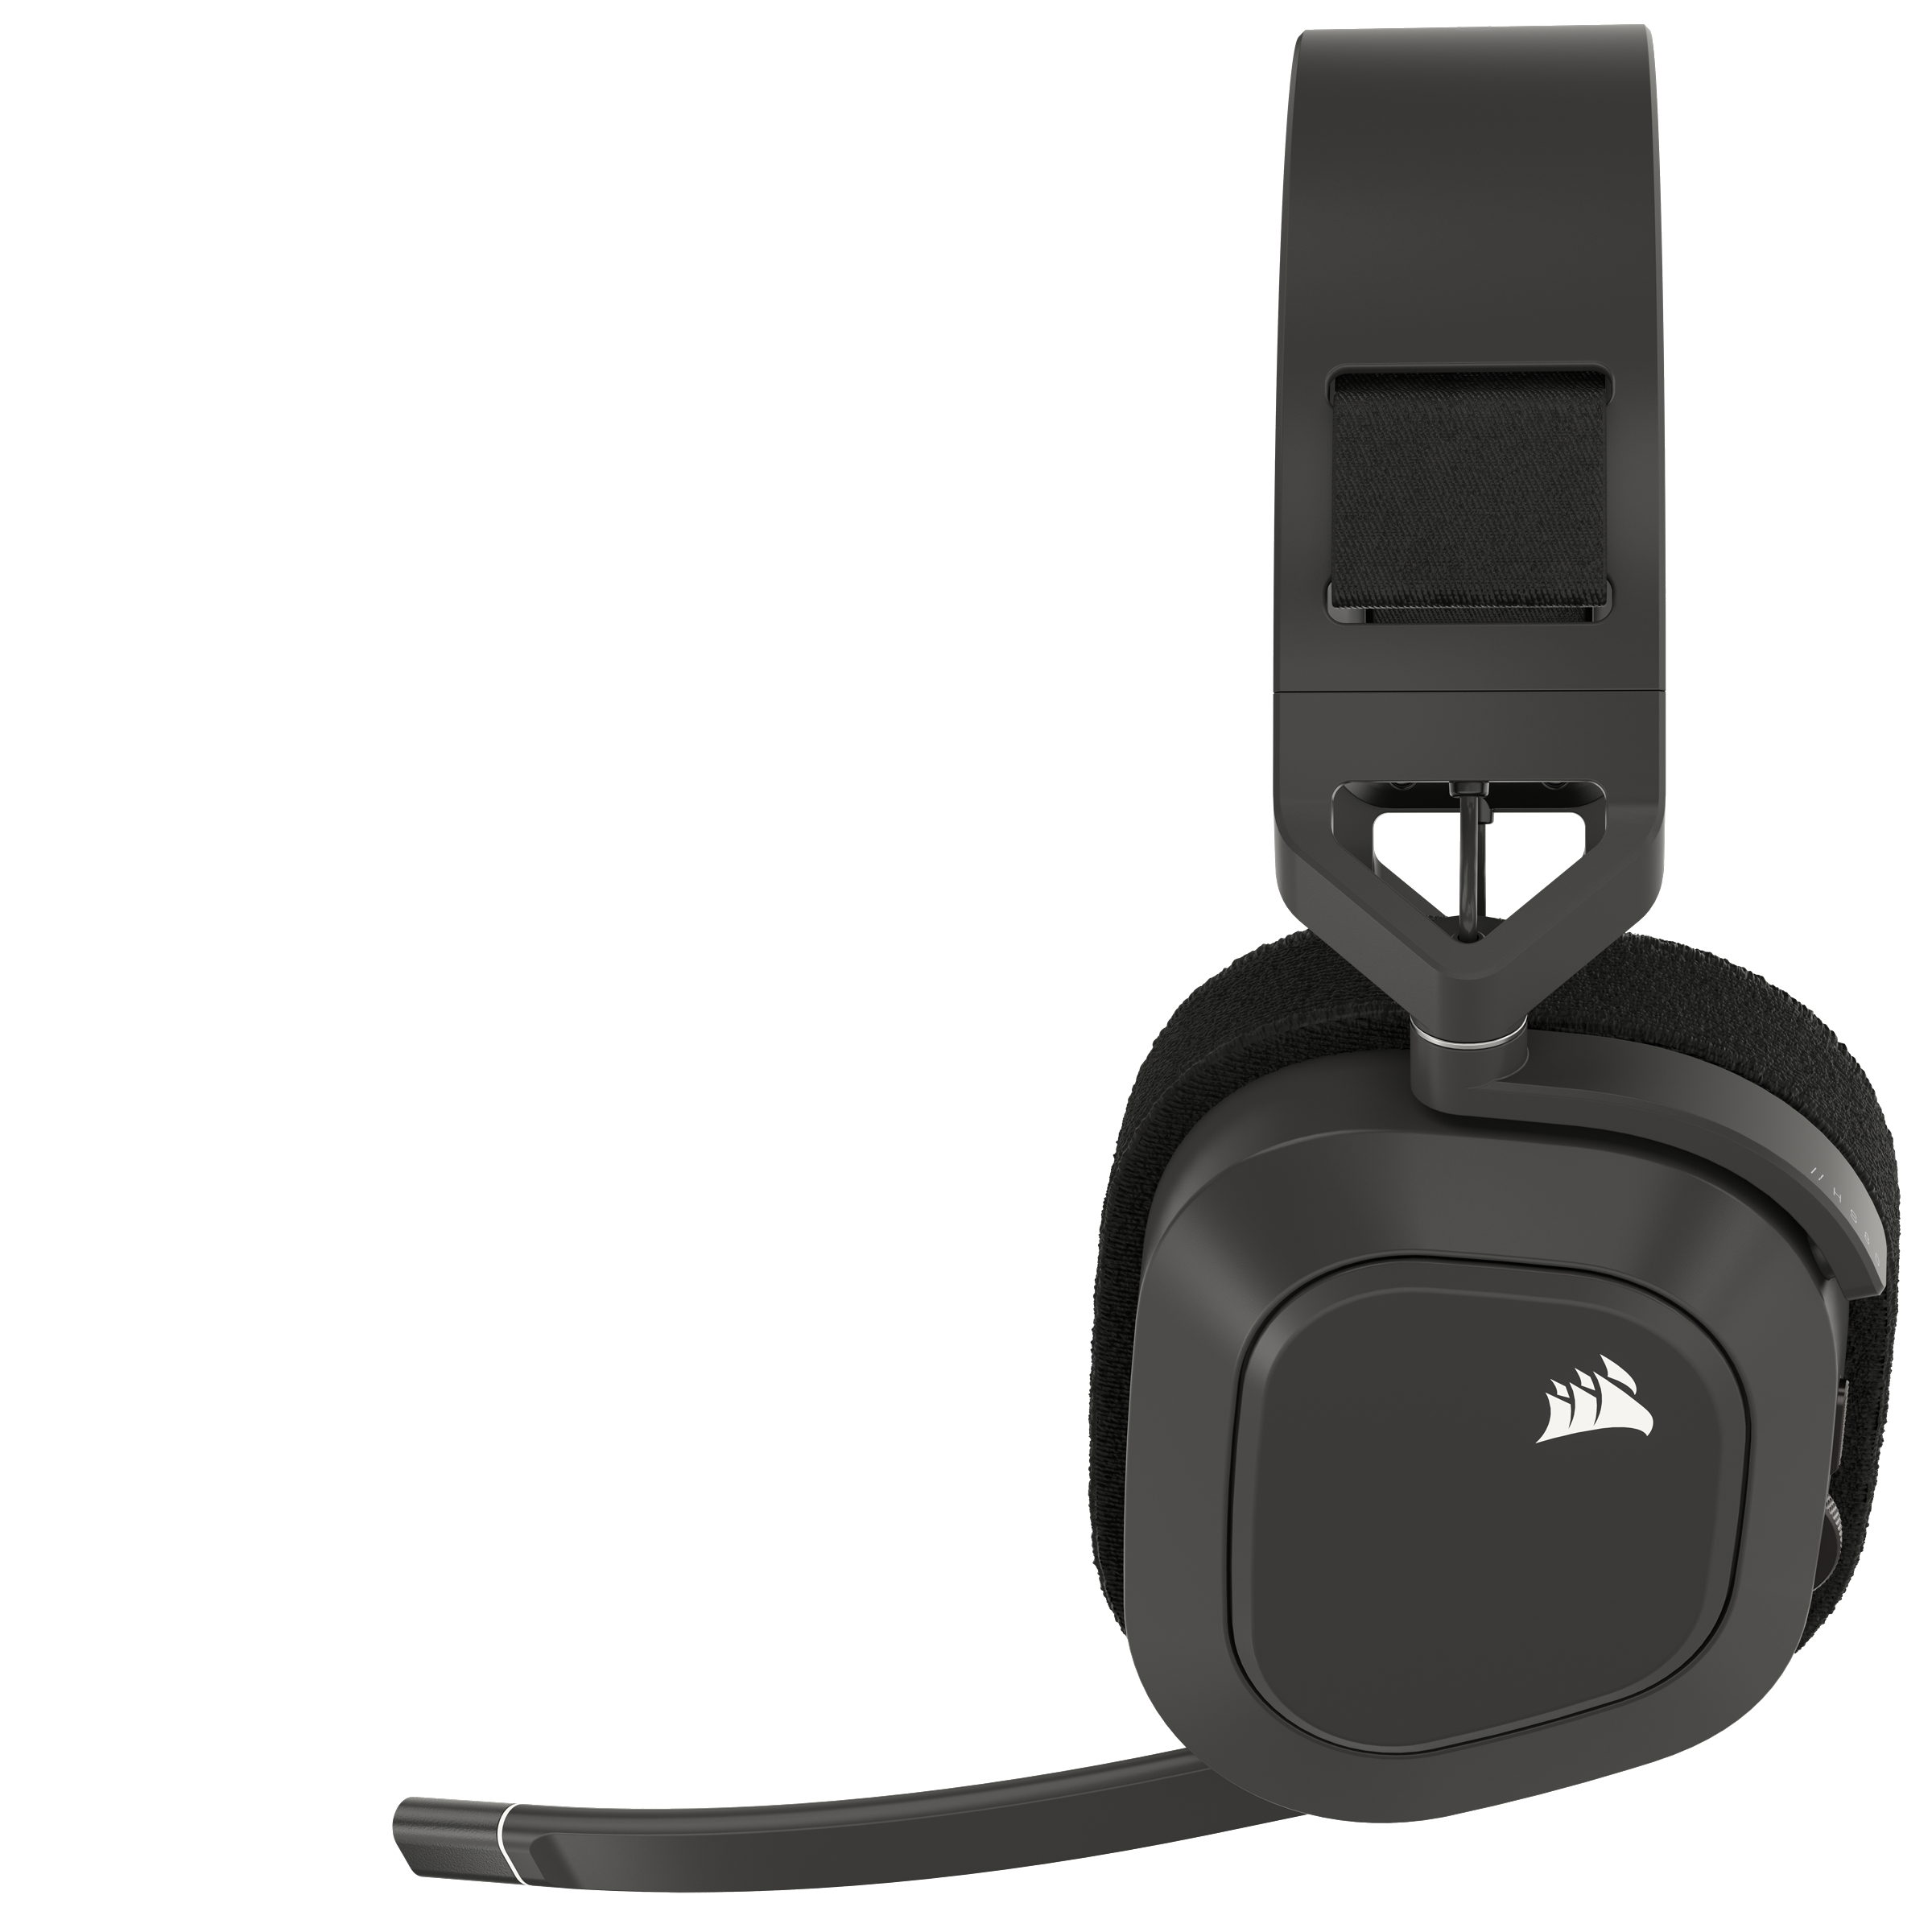 CORSAIR Headset Gaming Bluetooth Over-ear Stahlgrau Max, HS80